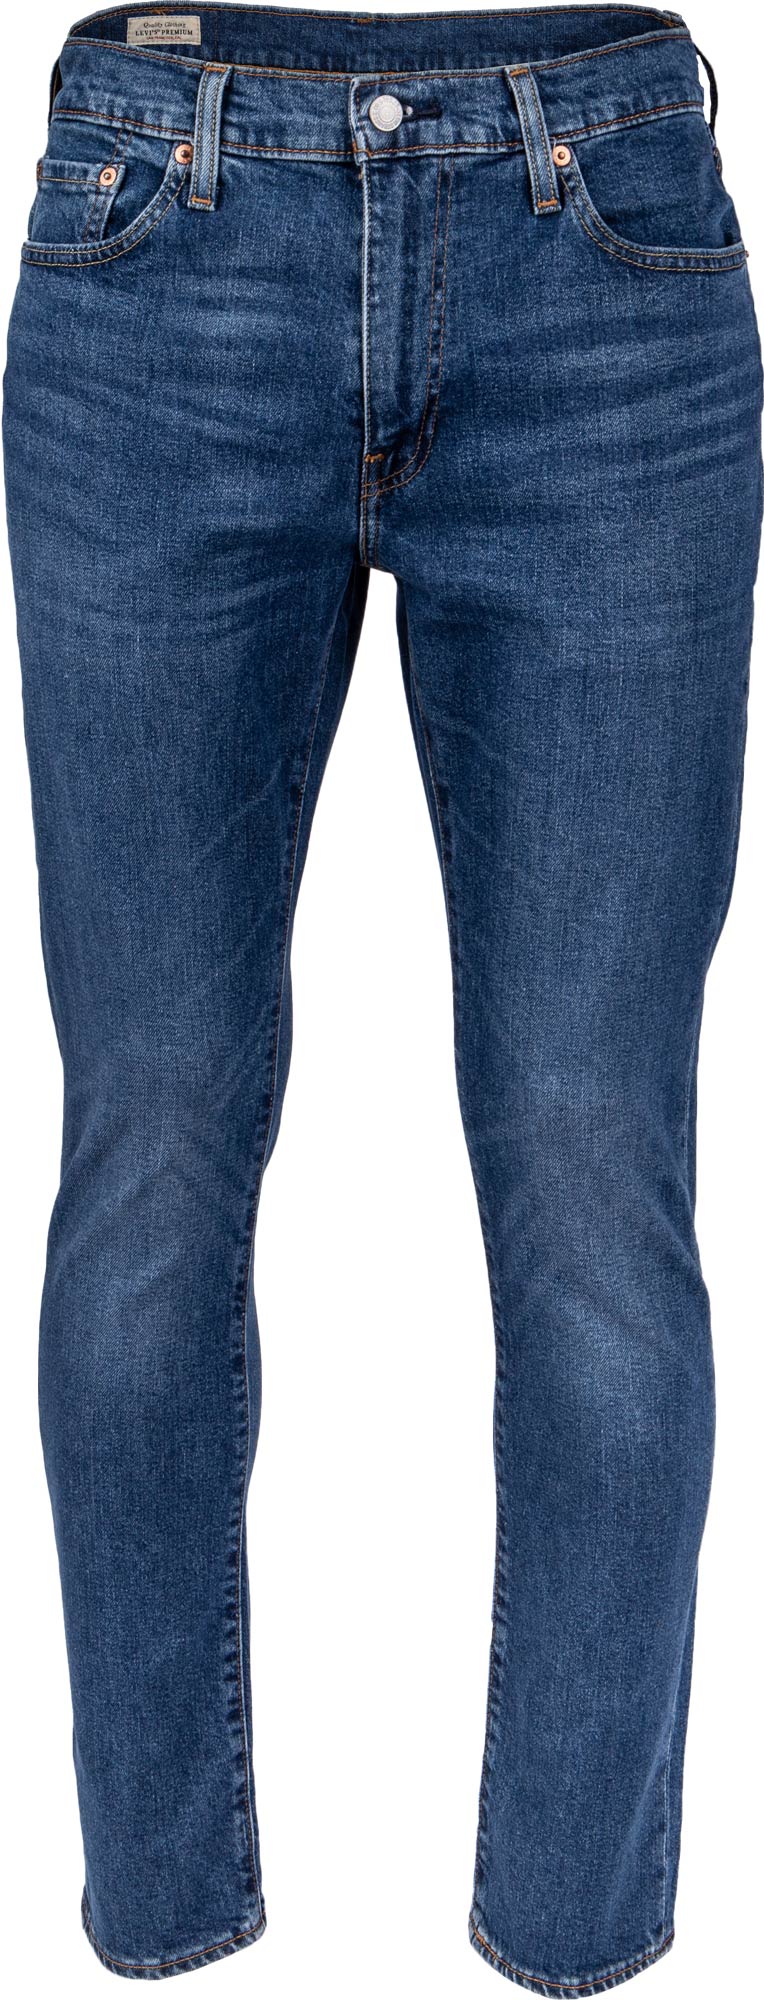 Men’s jeans